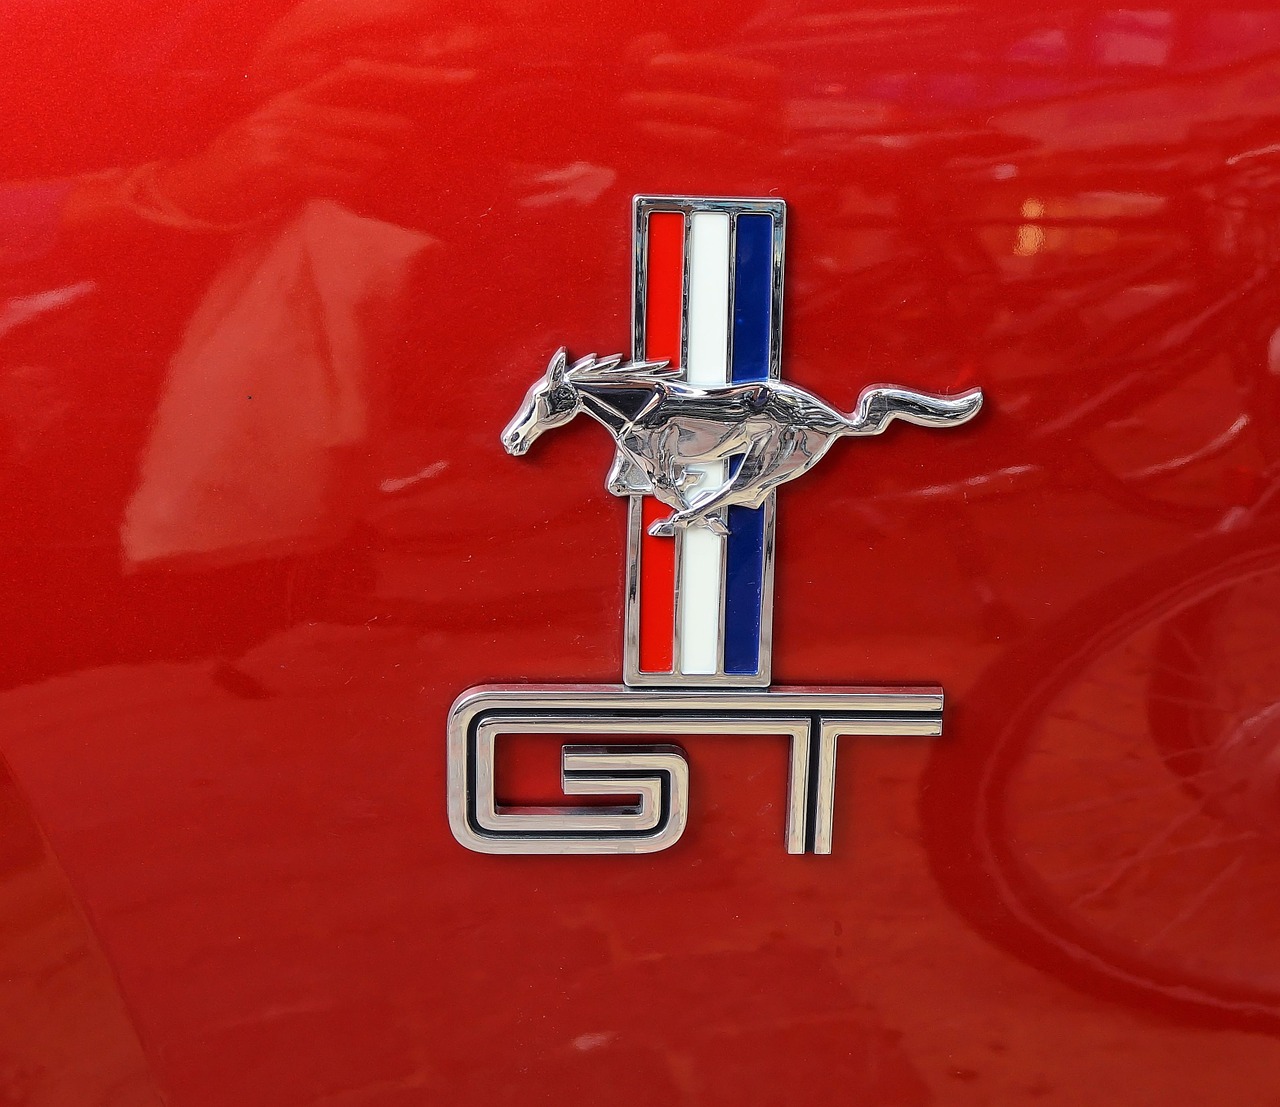 Ford Mustang, Automatinis, Dažyti, Kūnas, Logotipas, Emblema, Dažai, Oldtimer, Sportinė Mašina, Transporto Priemonė